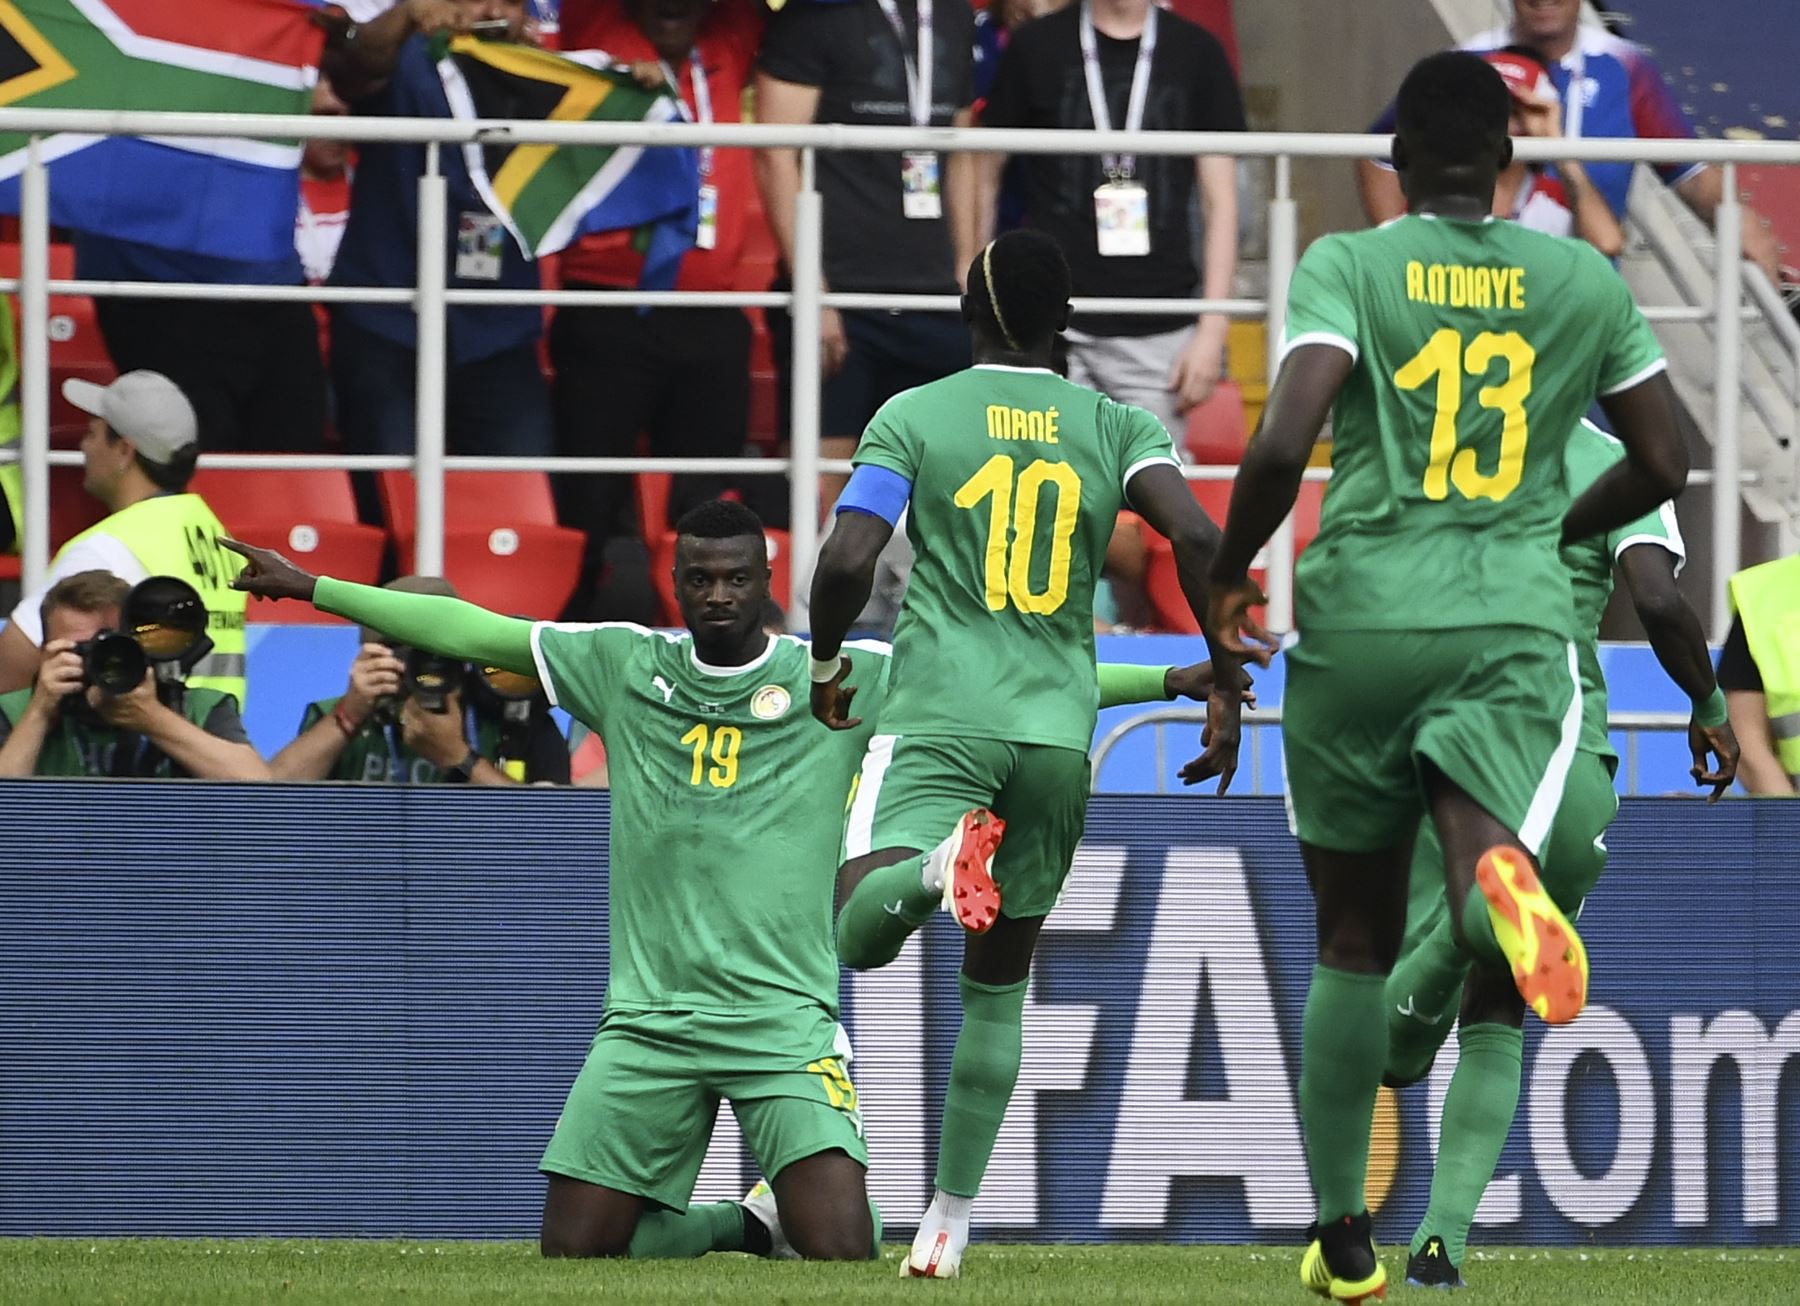 El alero Mbaye Niang (R) de Senegal celebra después de anotar su segundo gol durante el partido de fútbol del Grupo H de la Copa del Mundo Rusia 2018 entre Polonia y Senegal en el Estadio Spartak de Moscú el 19 de junio de 2018. AFP